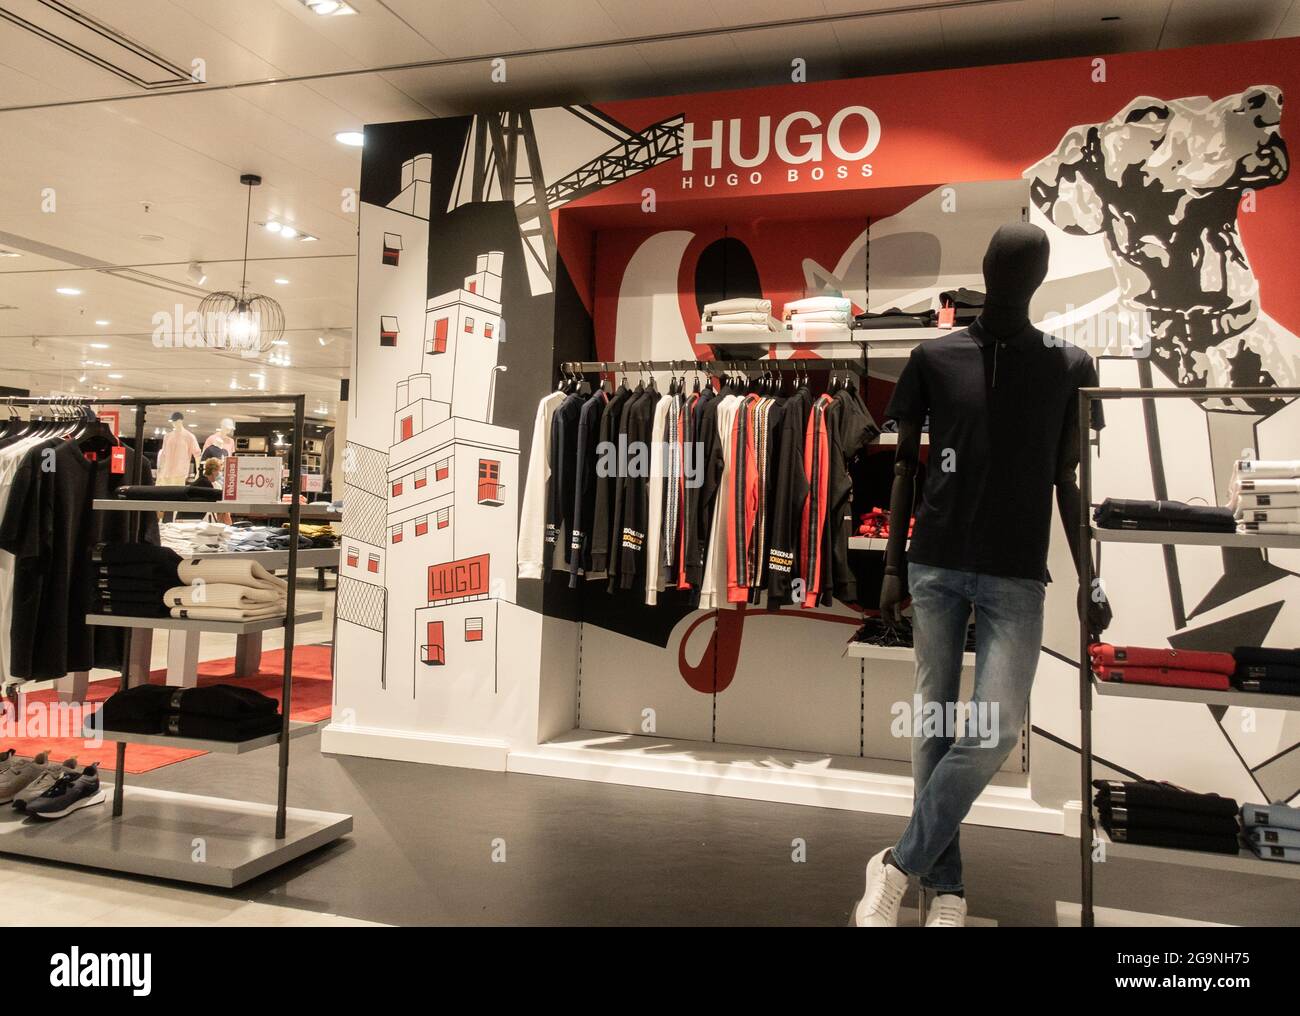 Negozio di abbigliamento Hugo Boss Foto Stock